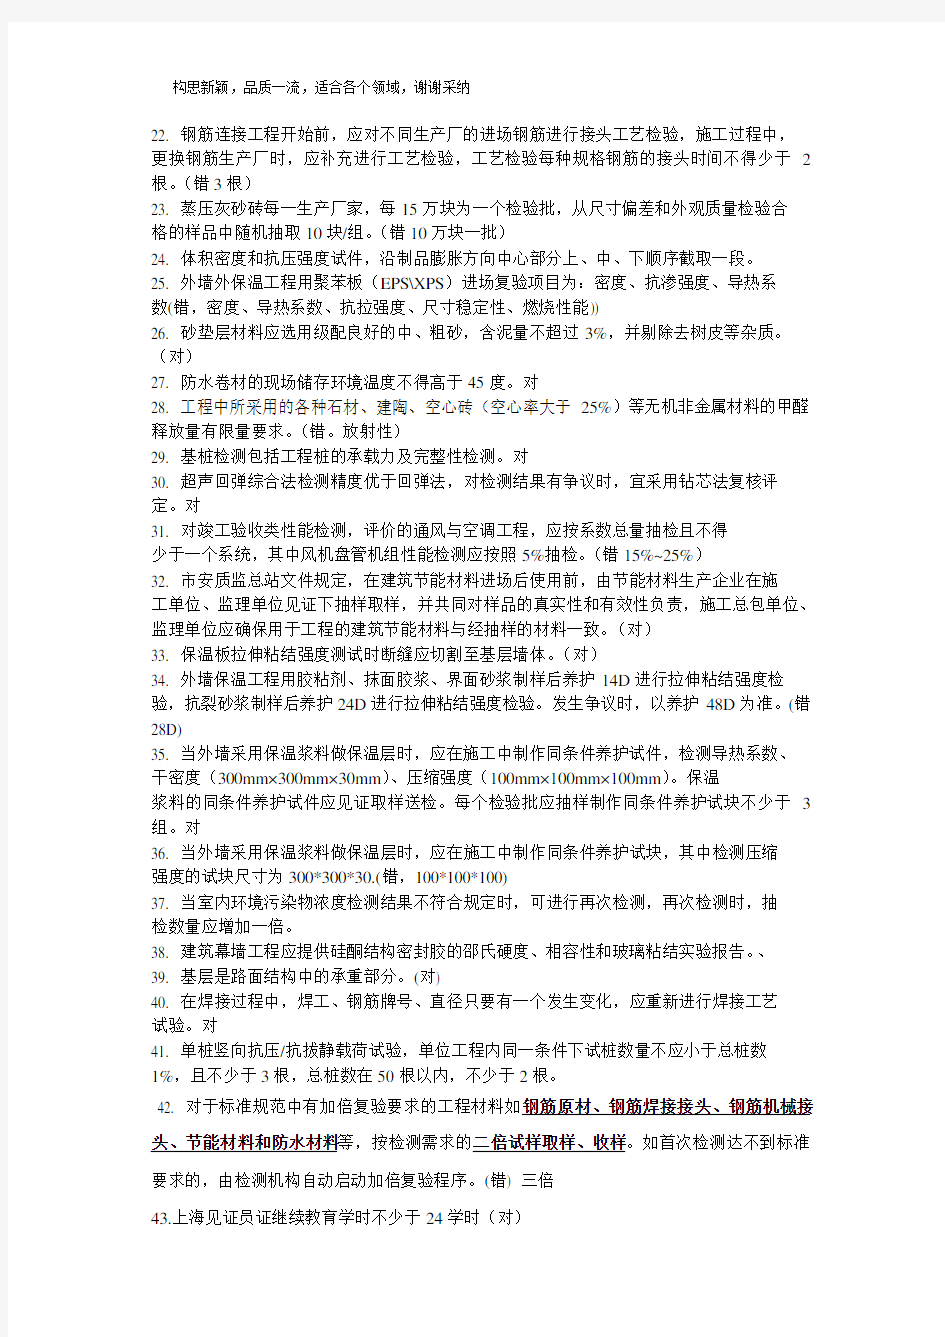 2019年上海见证员考试试题